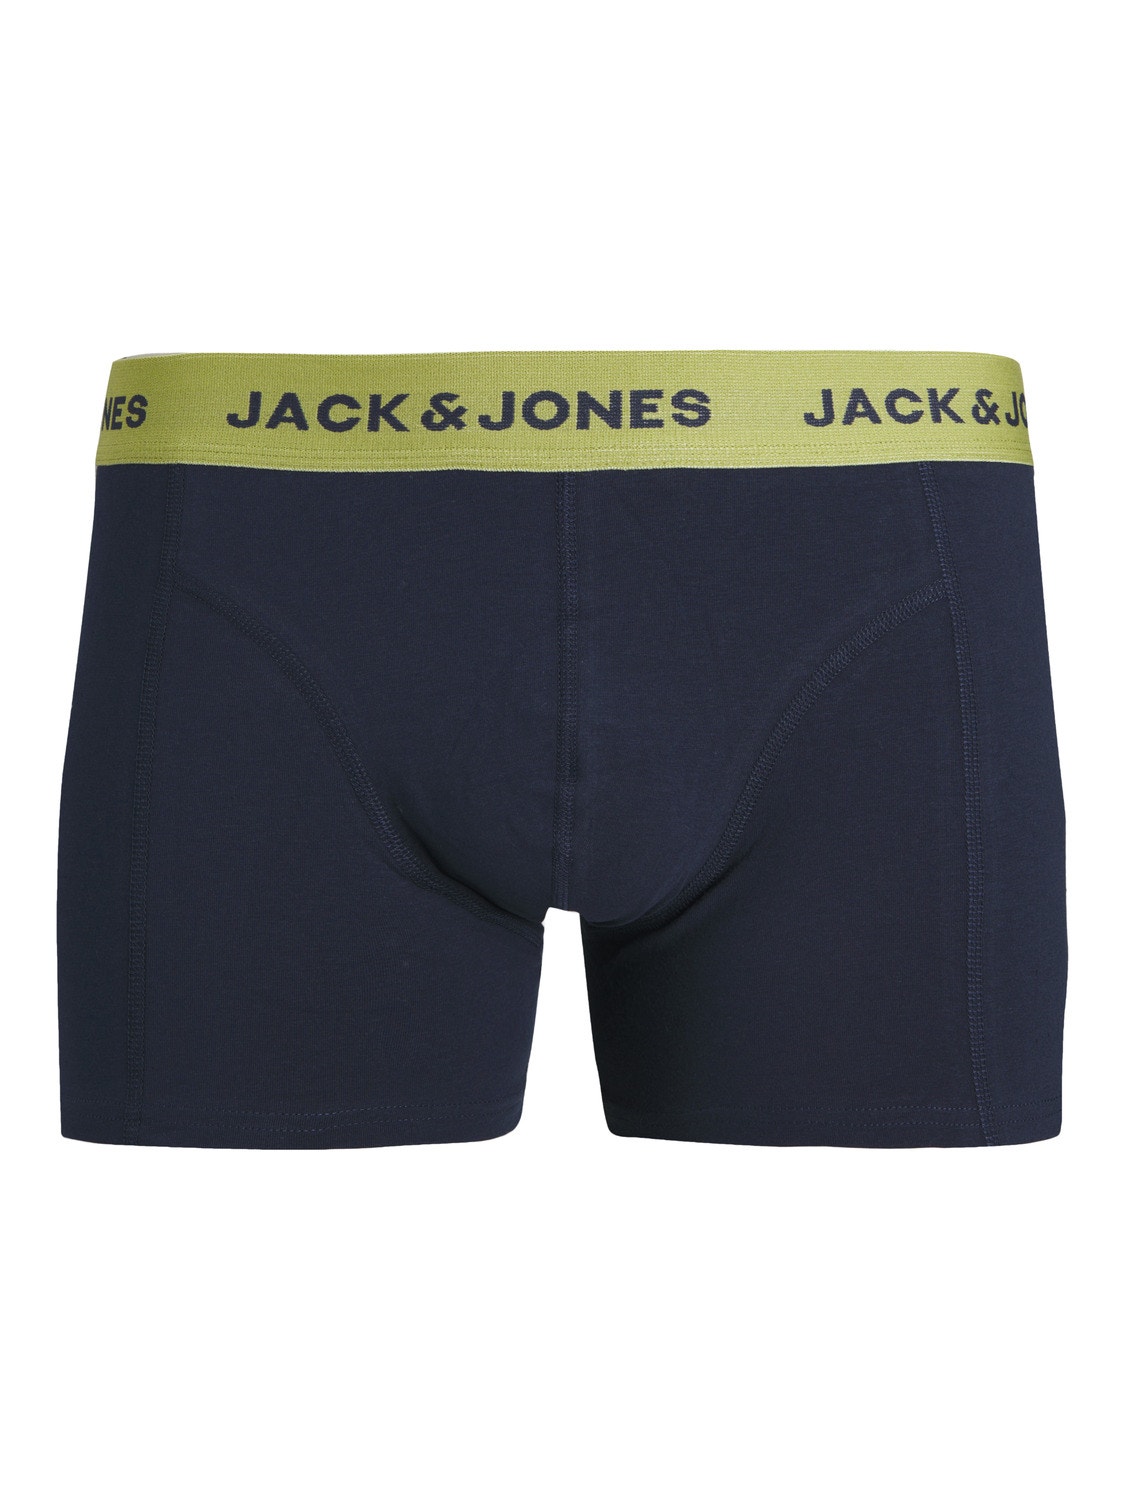 Jack & Jones 3-pakuotės Trumpikės -Navy Blazer - 12252530